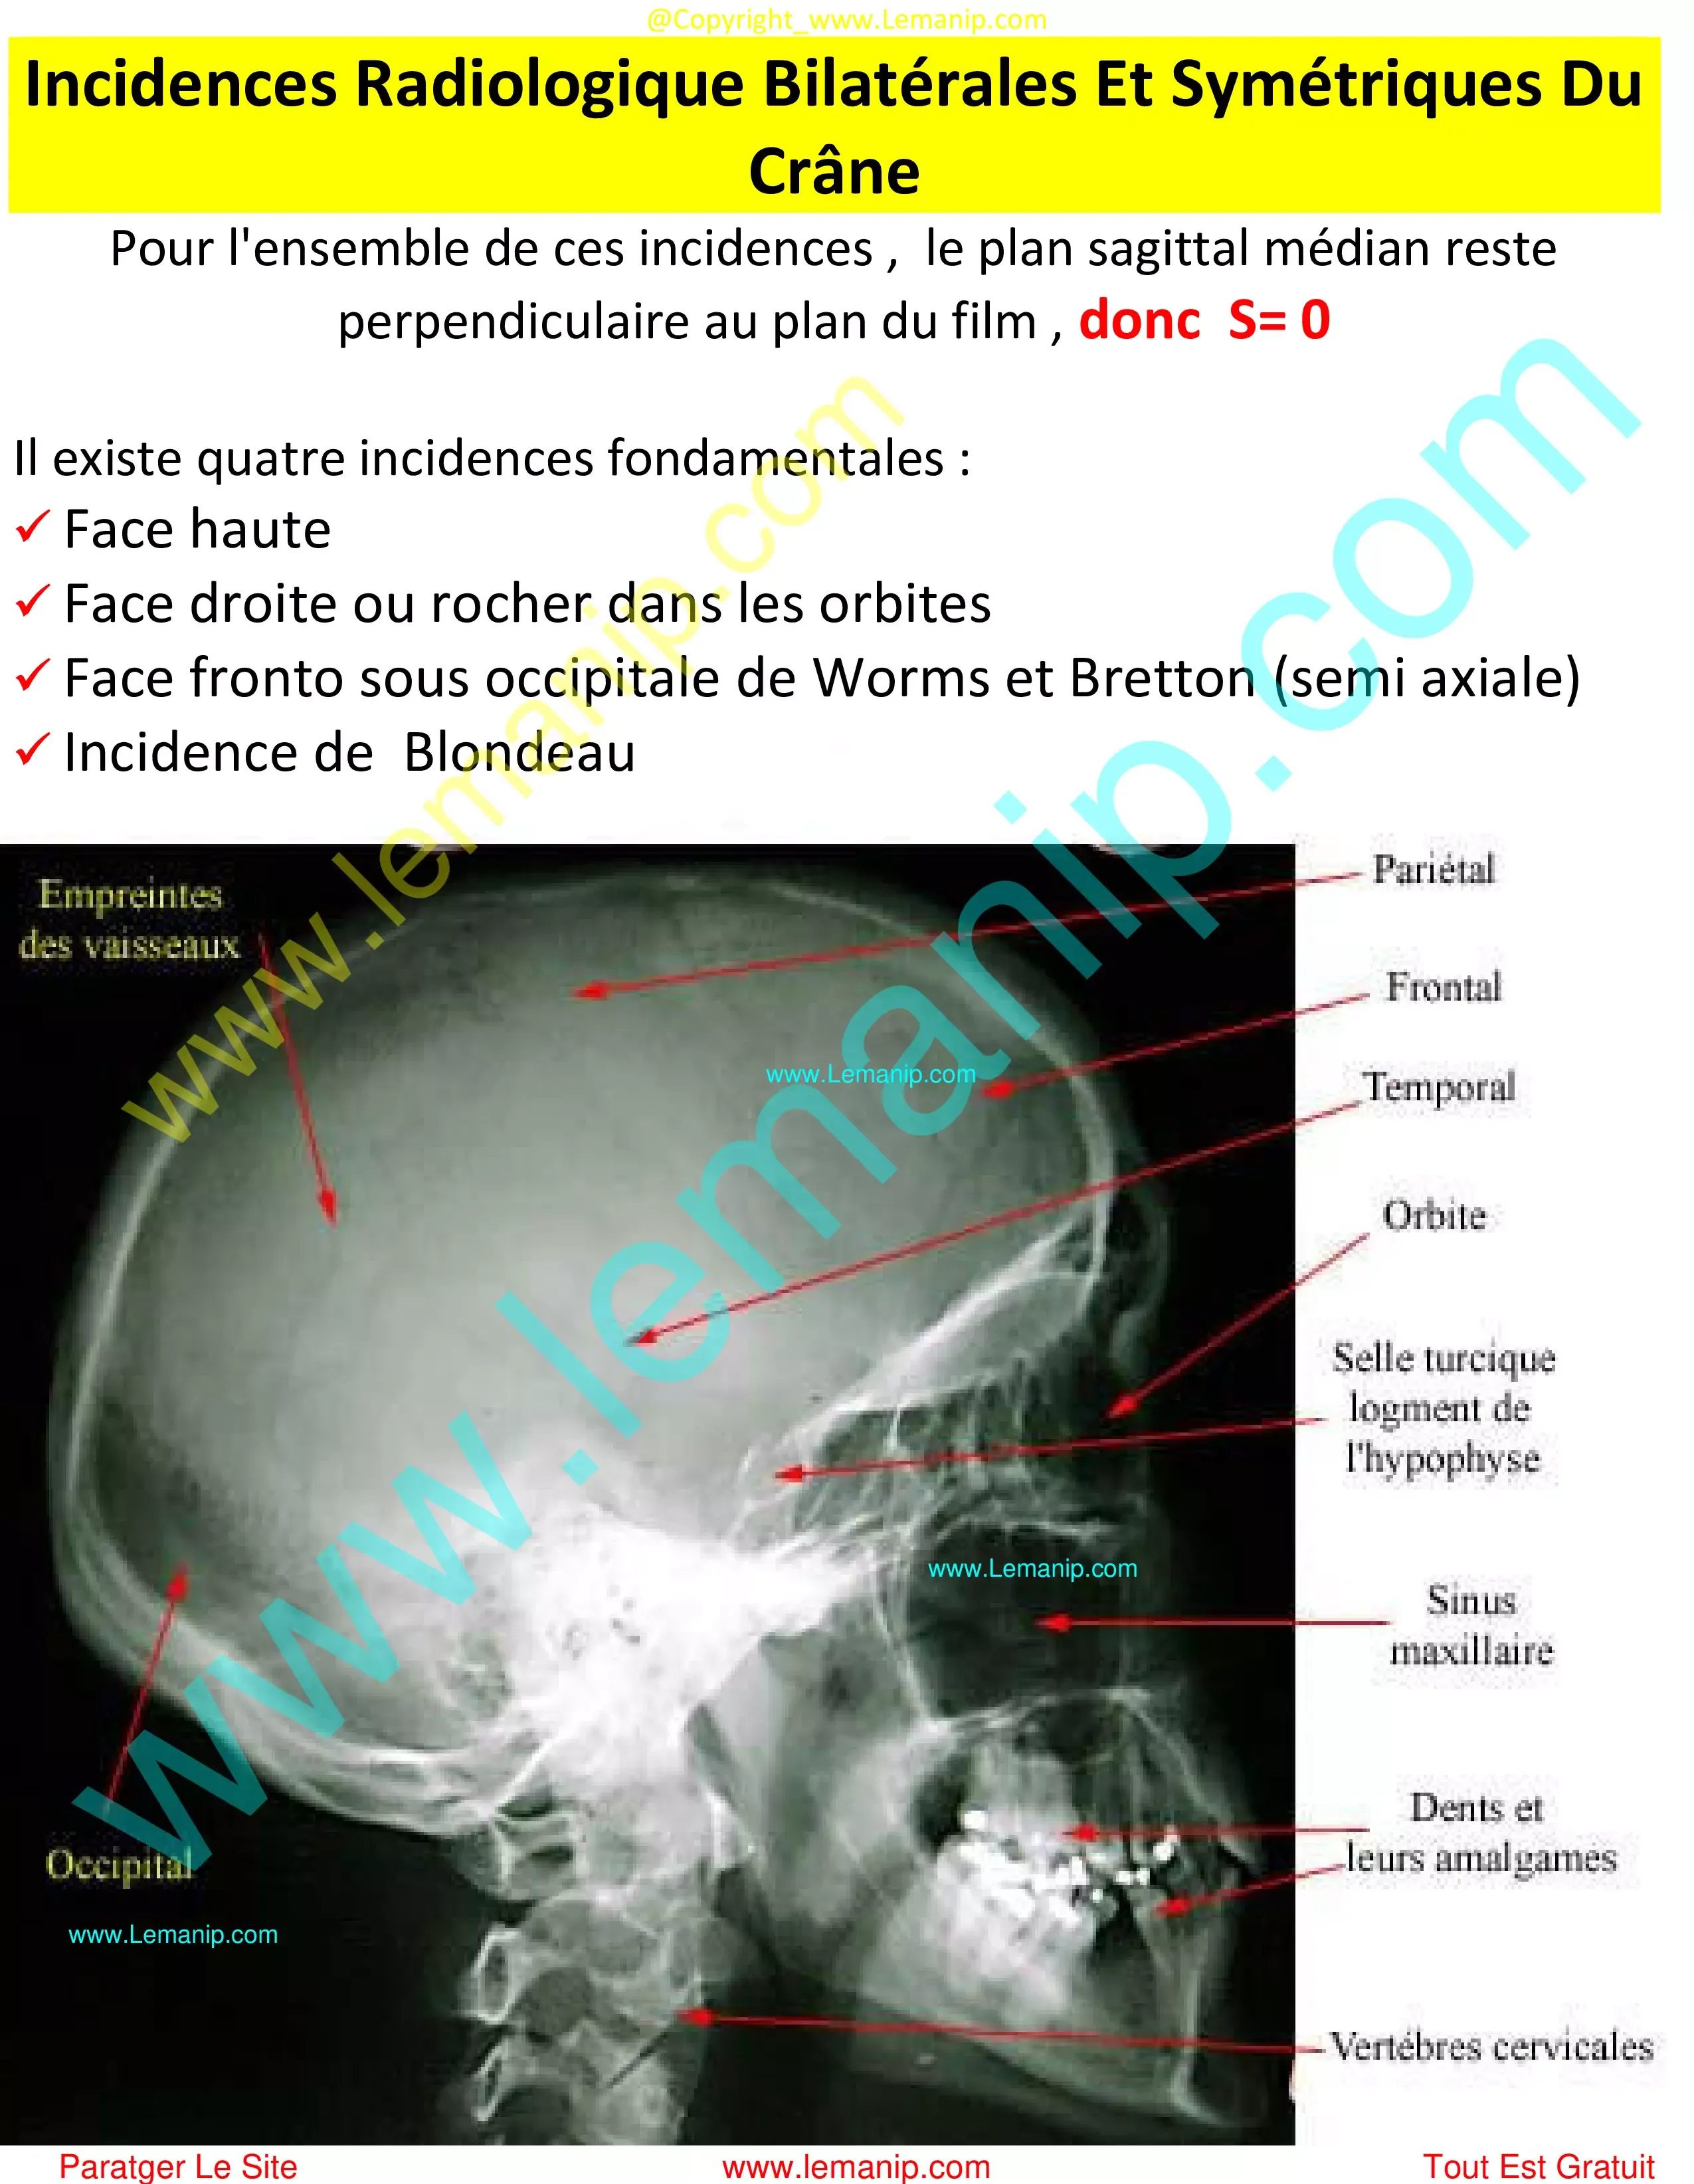 la crane,la crâne,human skull,multiple myeloma skull xray,skull osteoma radiology,skull learning anatomy,exploded skull model,skull anatomy poster,giraffe skull,baboon skull